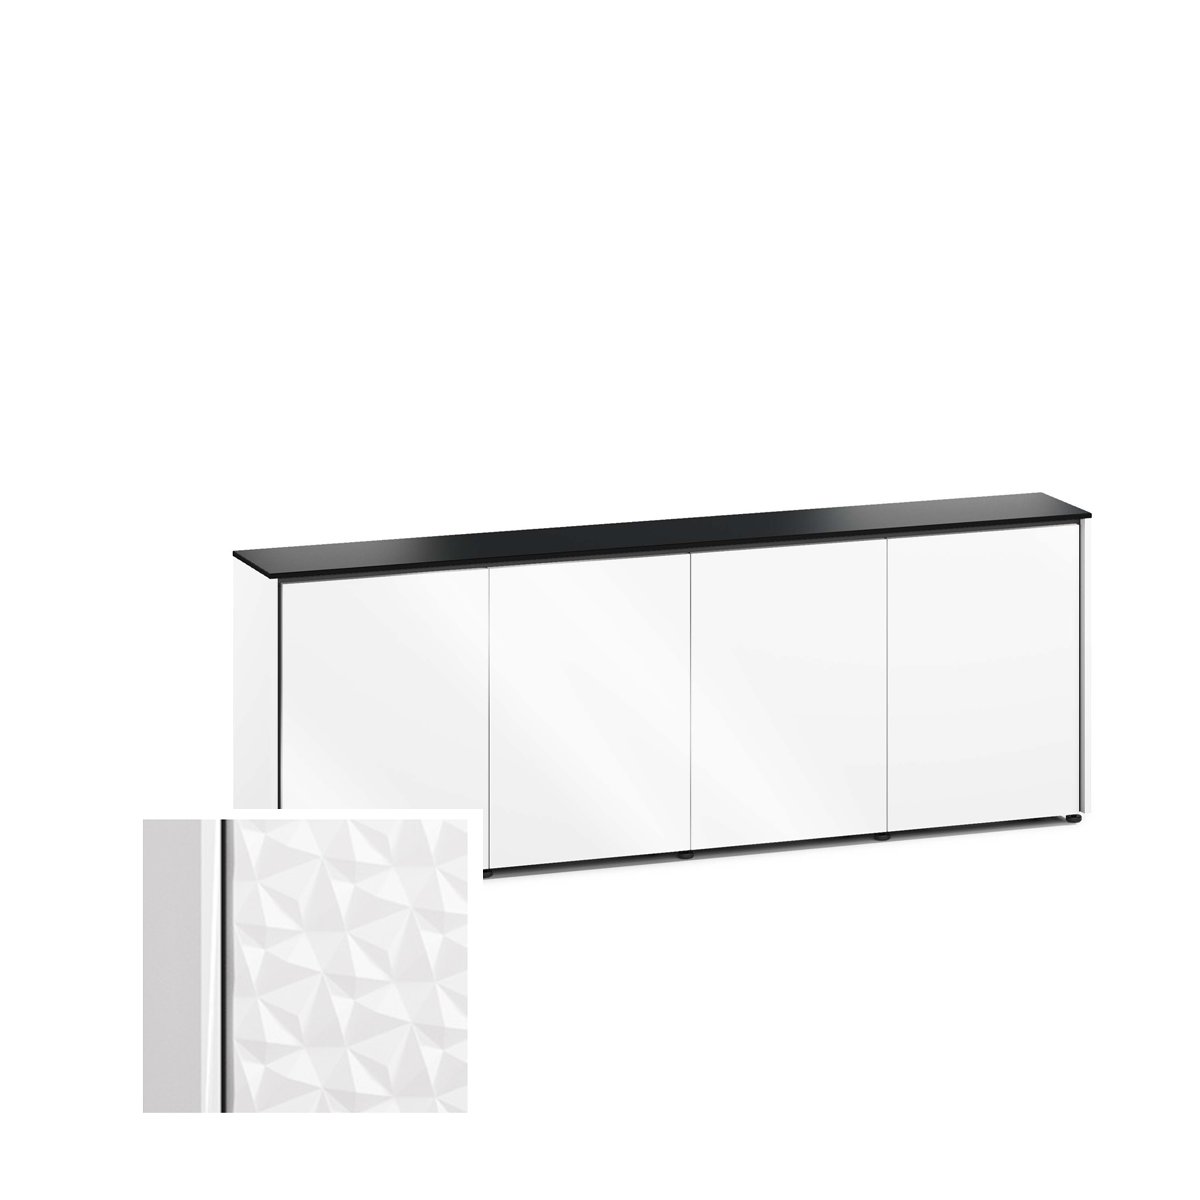 D1/347A/ML/WH/BK 4 Bay Low-Profile, Wall Cabinet, Milan- White / Black Phenolic